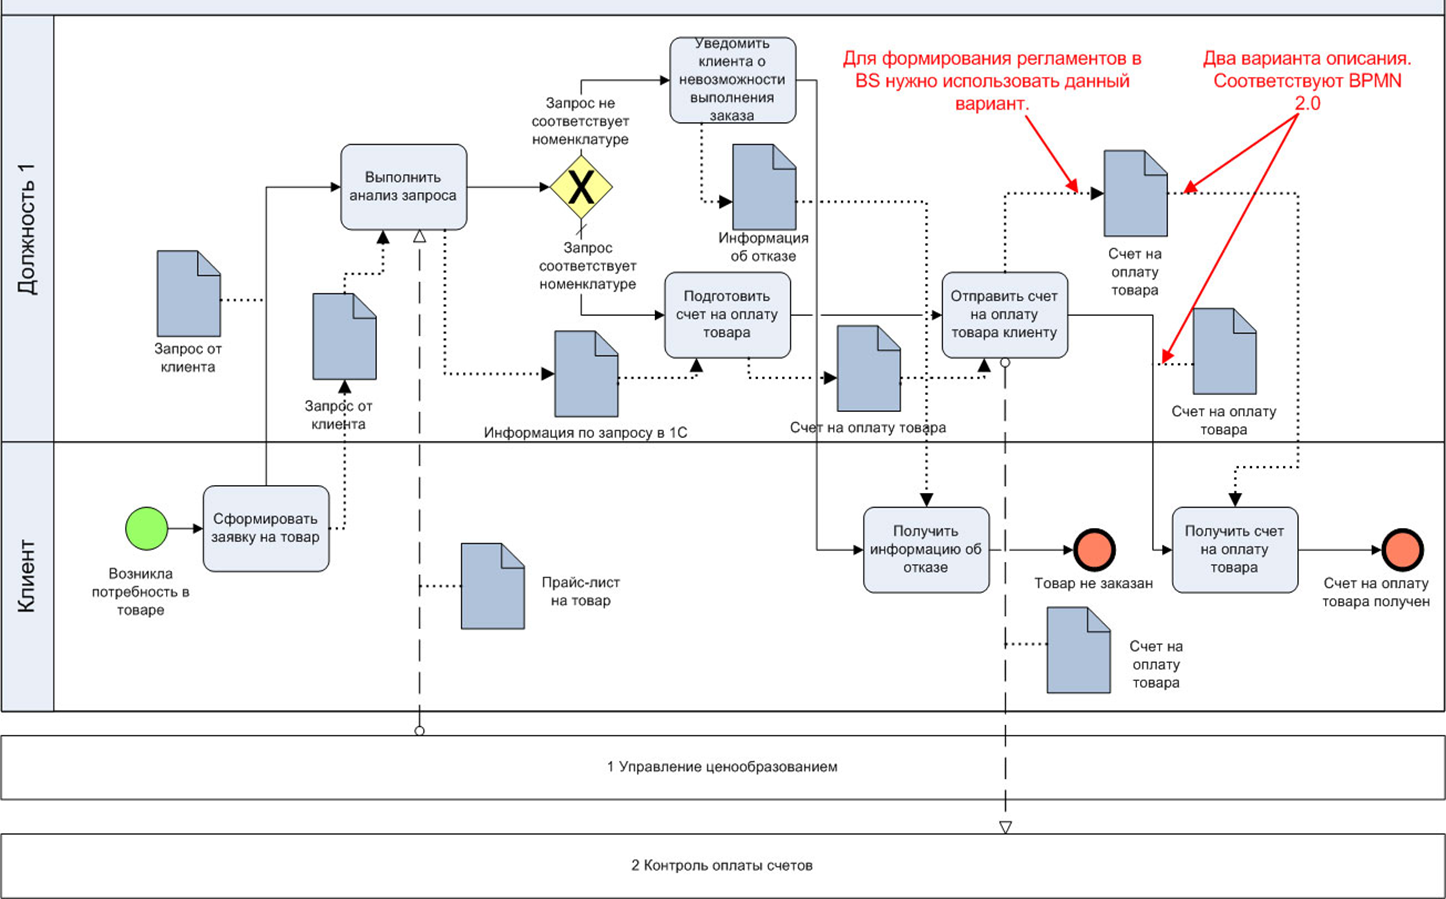 Что необходимо для обеспечения печати дбо. Схема процесса в нотации BPMN. Диаграмма бизнес процессов BPMN 2.0. Схема бизнес процесса в нотации BPMN. Бизнес процесс BPMN 2.0.